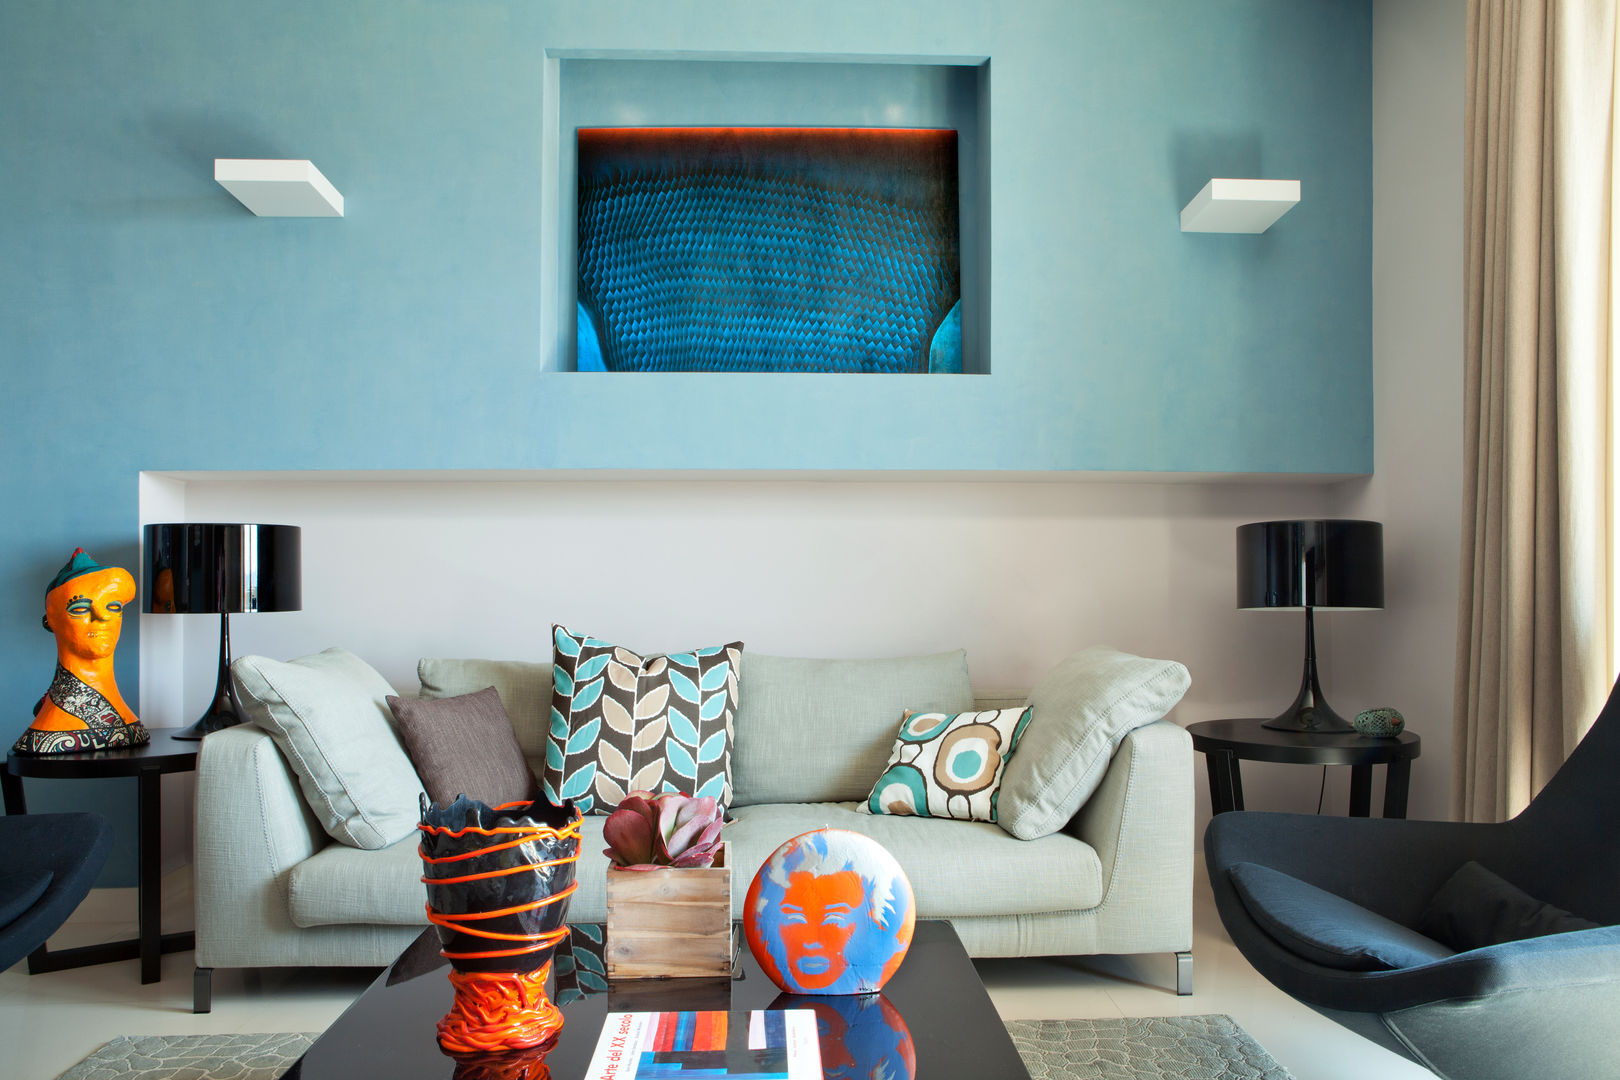 La casa ideale per un single, giovane e colorata, PDV studio di progettazione PDV studio di progettazione Living room Sofas & armchairs